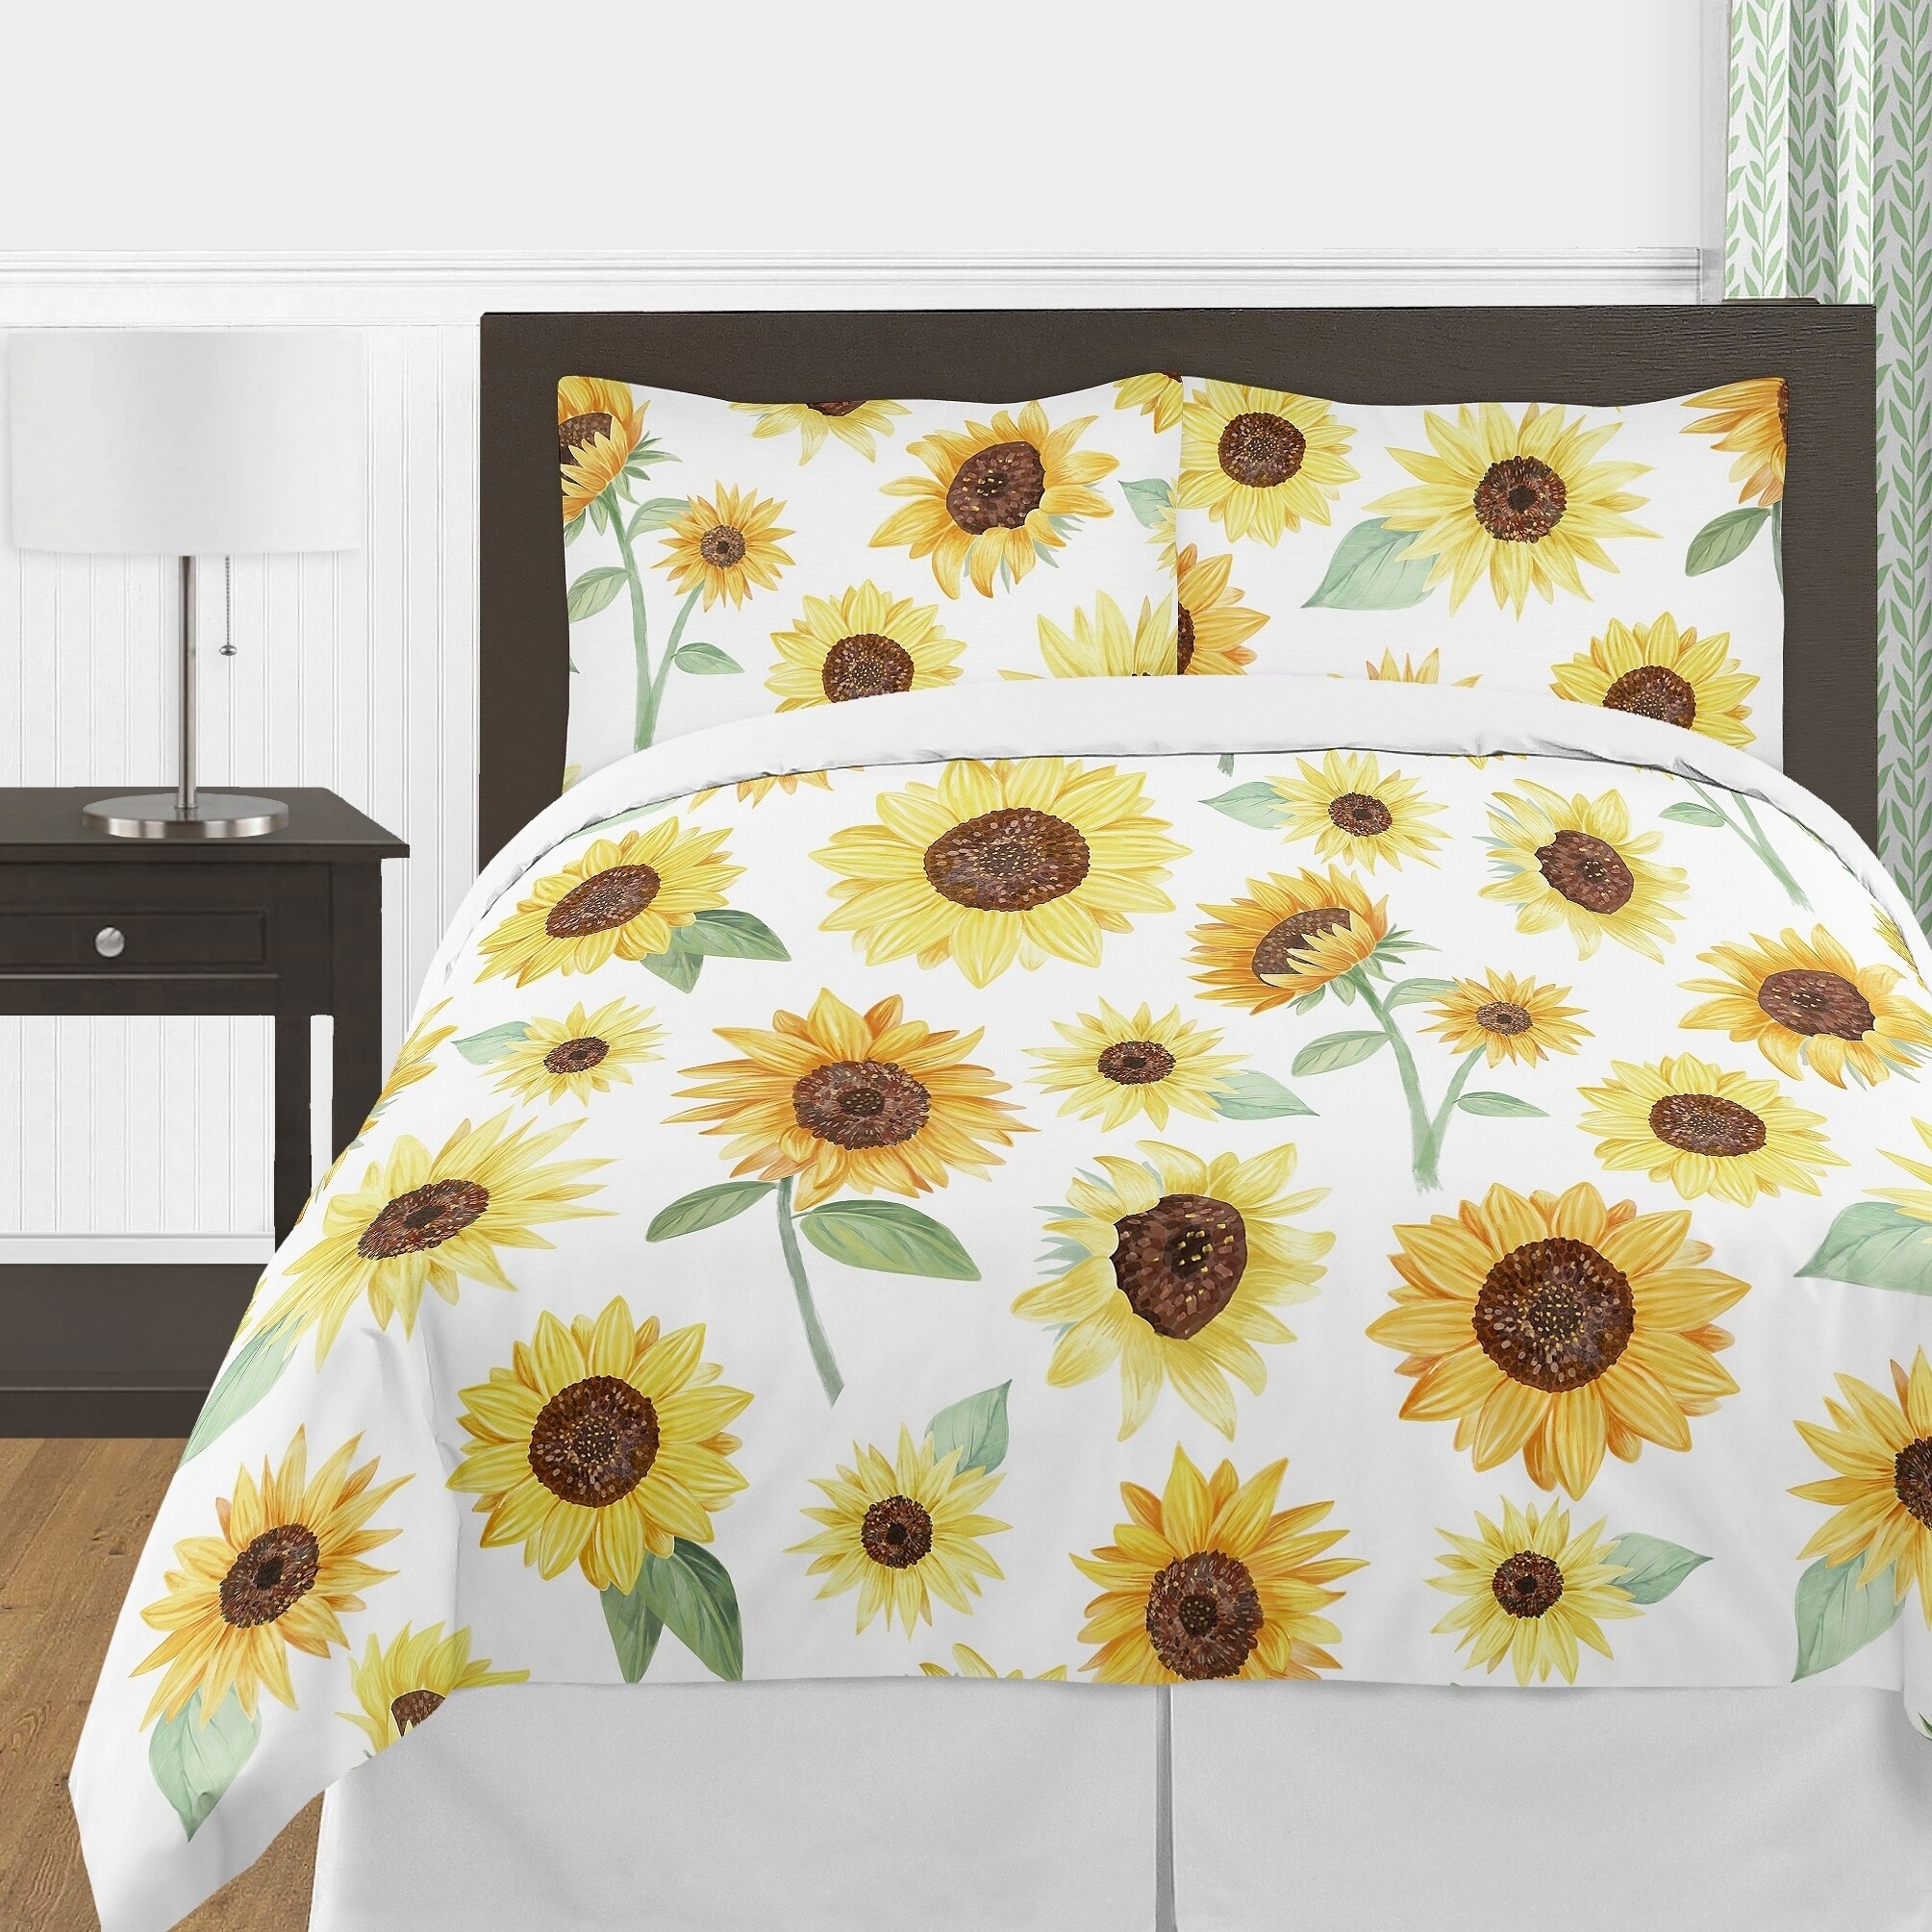 Sweet Jojo Sunflower Boho Floral Yellow Green White 3pc Full Queen Bedding Set 